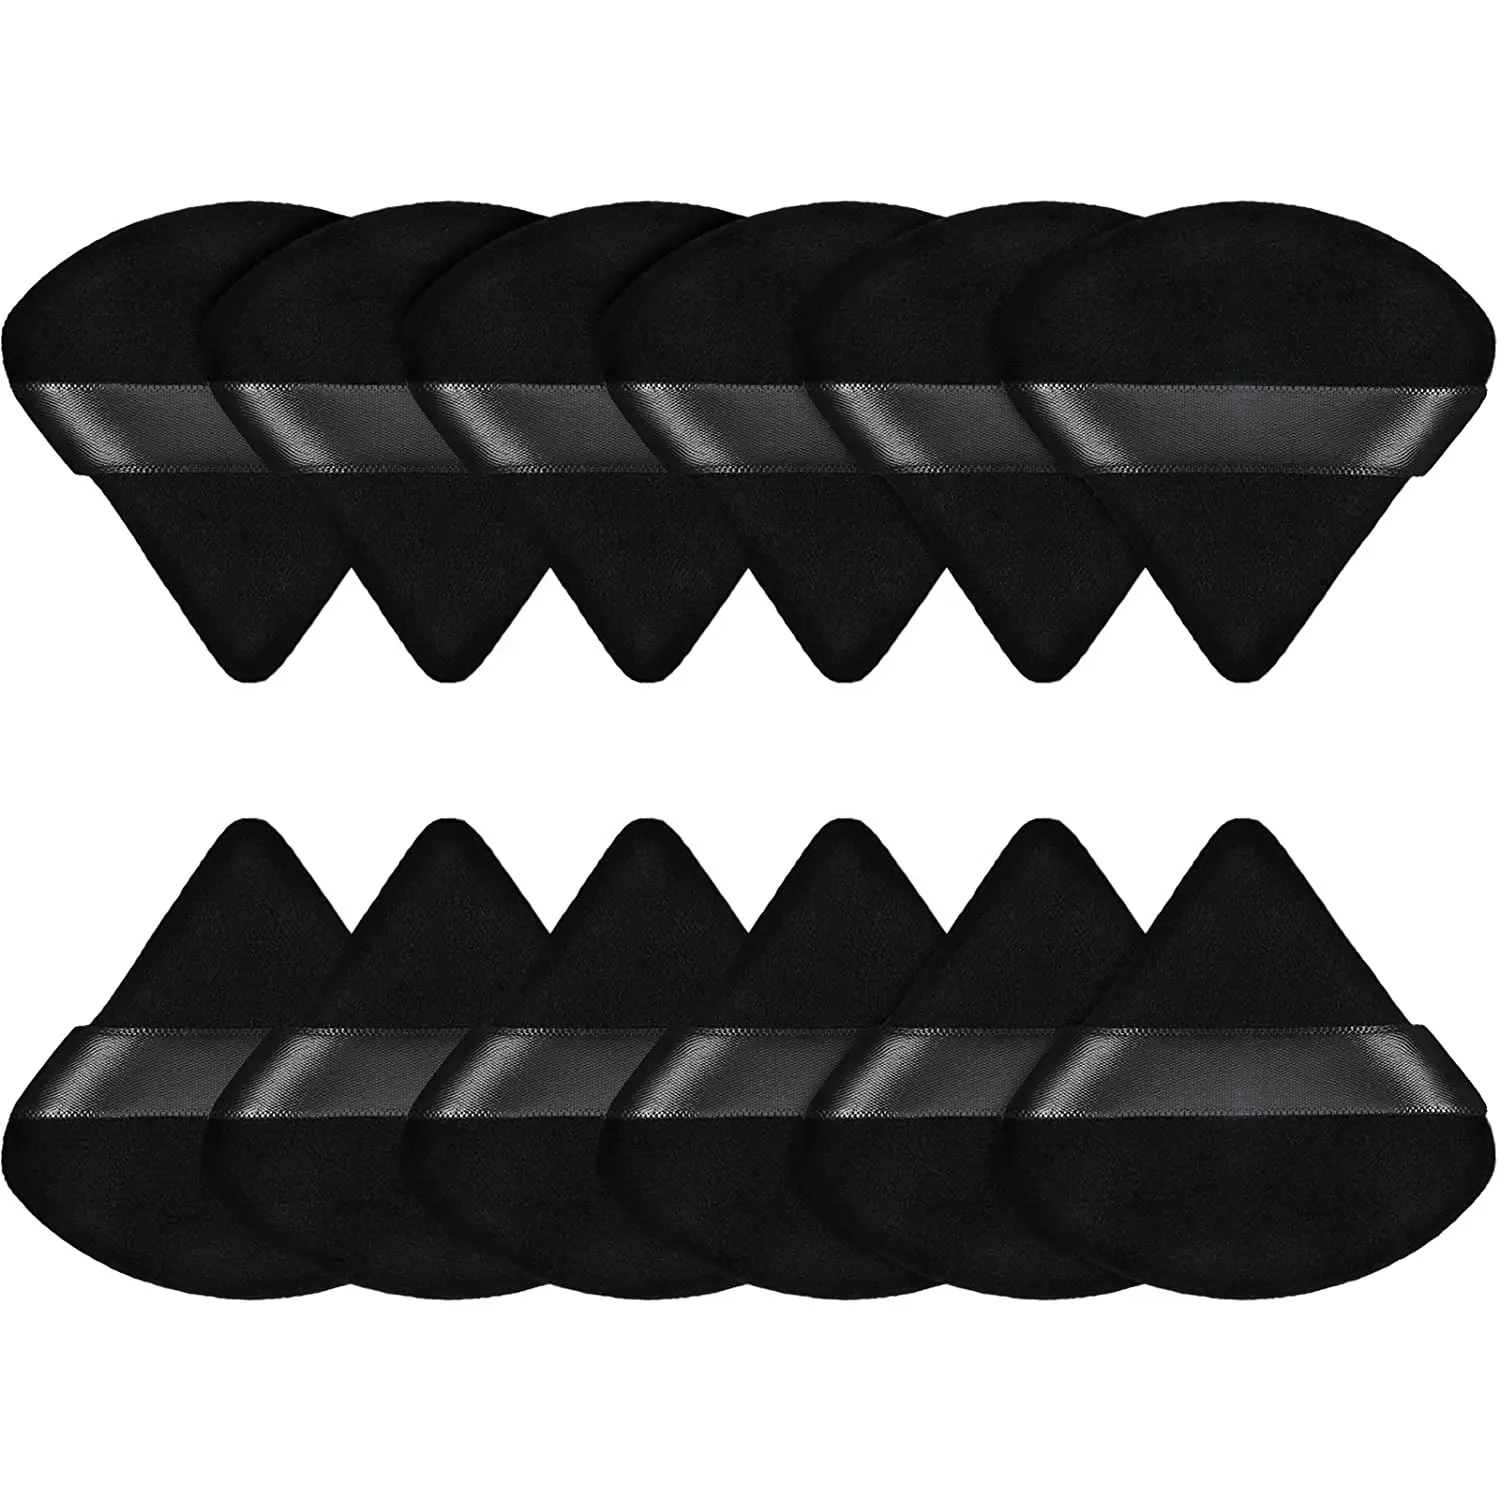 Özel Logo ıslak kuru siyah yumuşak üçgen kozmetik puf saf pamuk makyaj yüz pudra puf